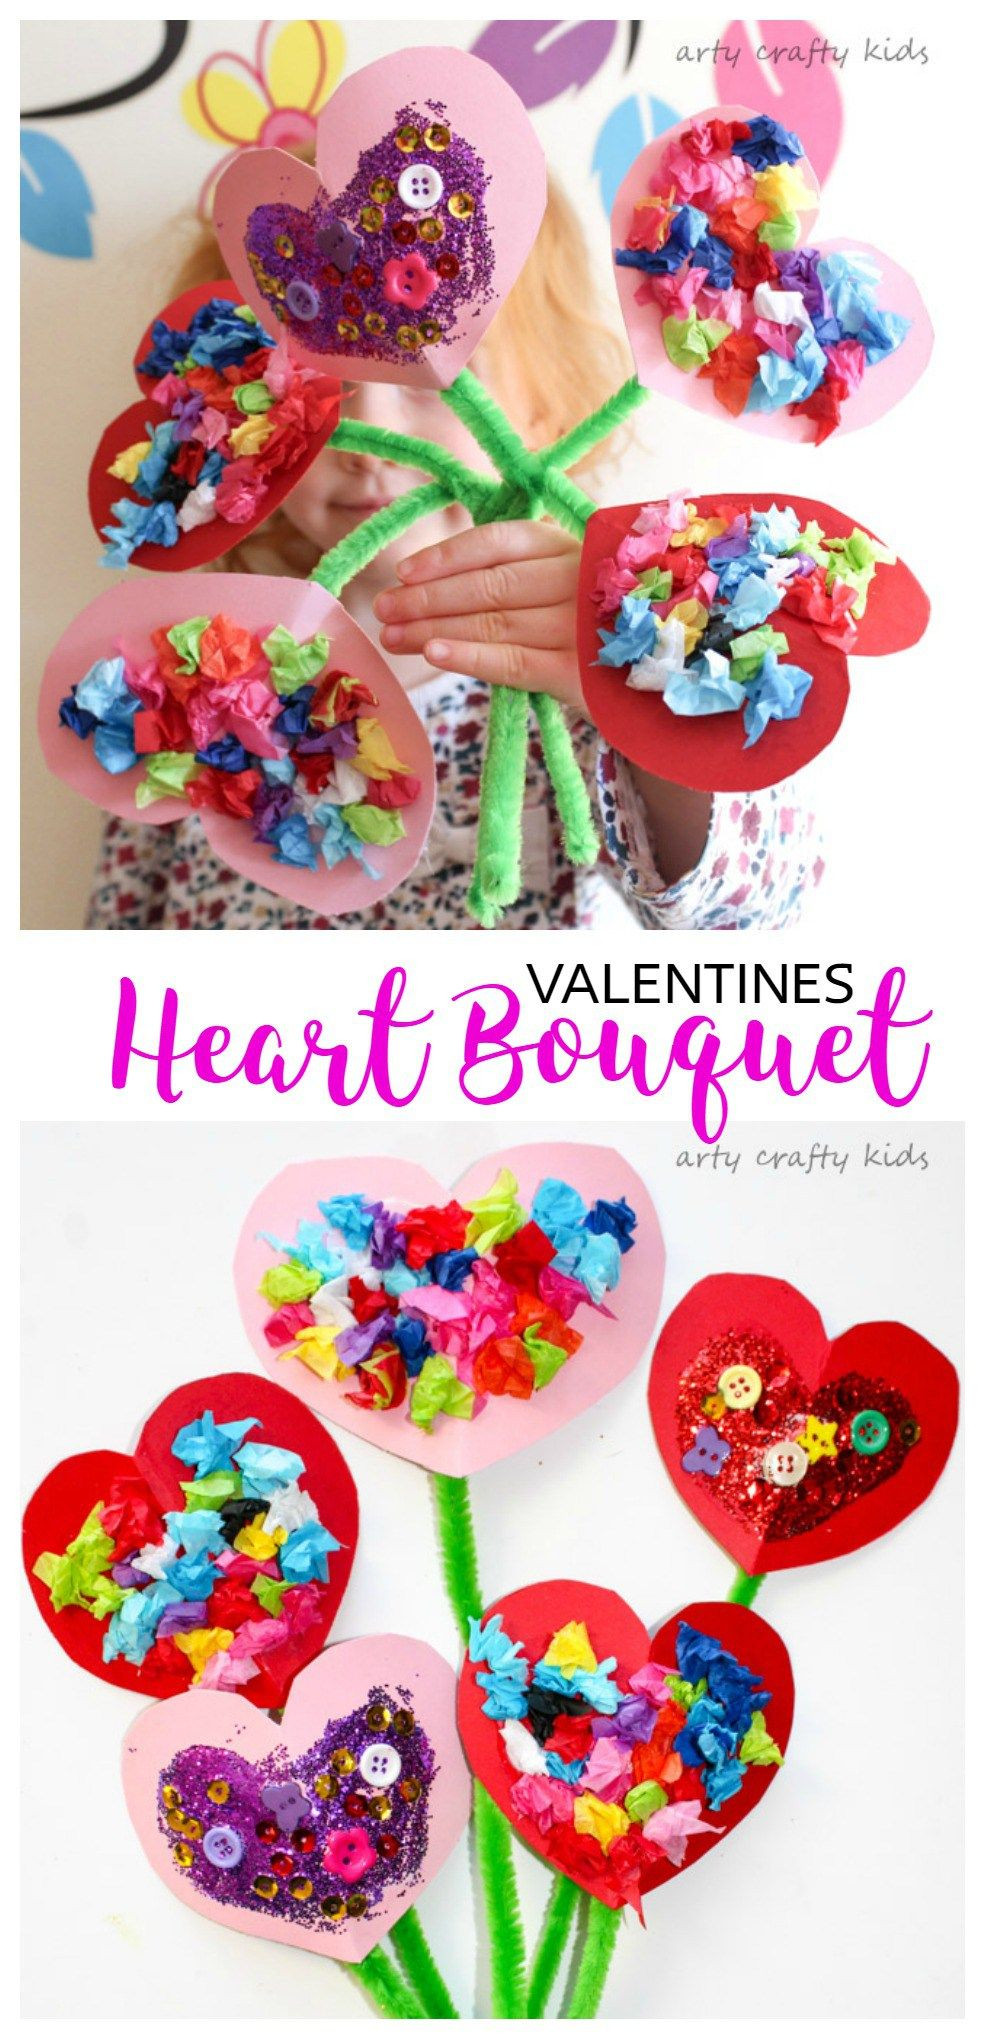 Toddler Valentine Craft Ideas
 Toddler Valentines Heart Bouquet